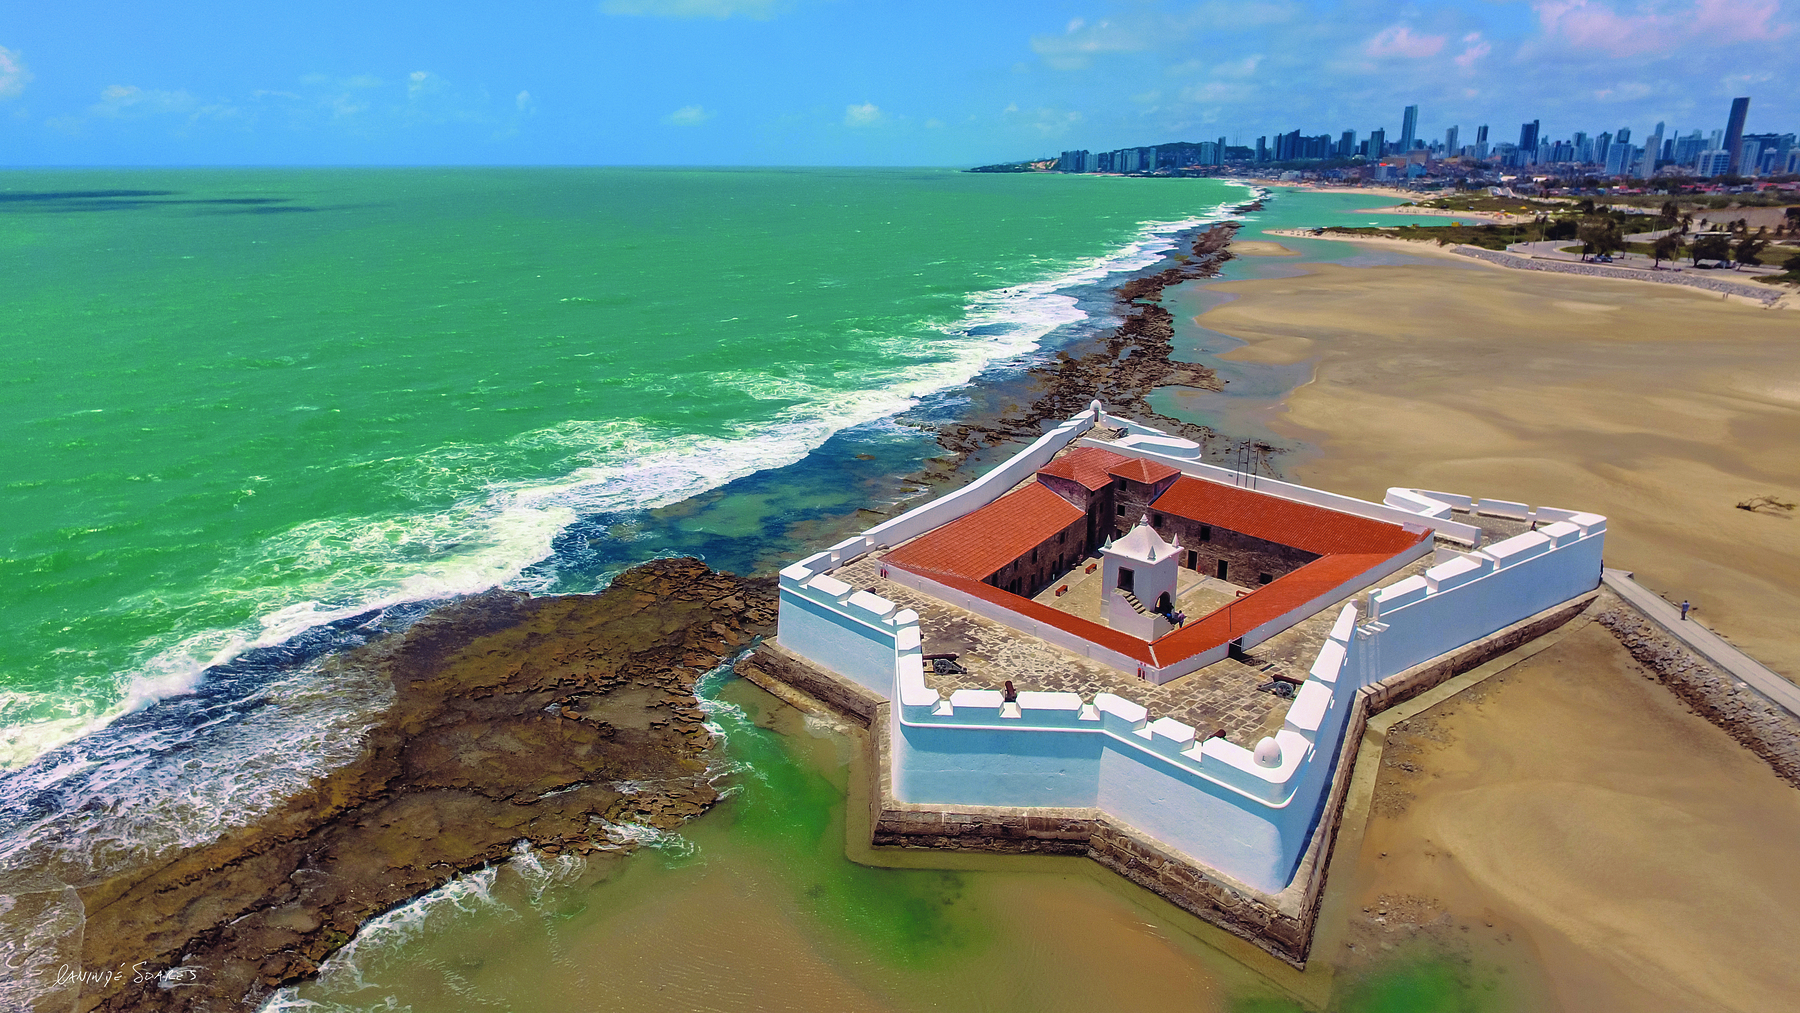 Fotografia. Vista aérea de uma fortaleza com paredes brancas, em formato de estrela com cinco pontas, com uma torre central, sobre um solo de areia, em uma praia banhada por águas esverdeadas.